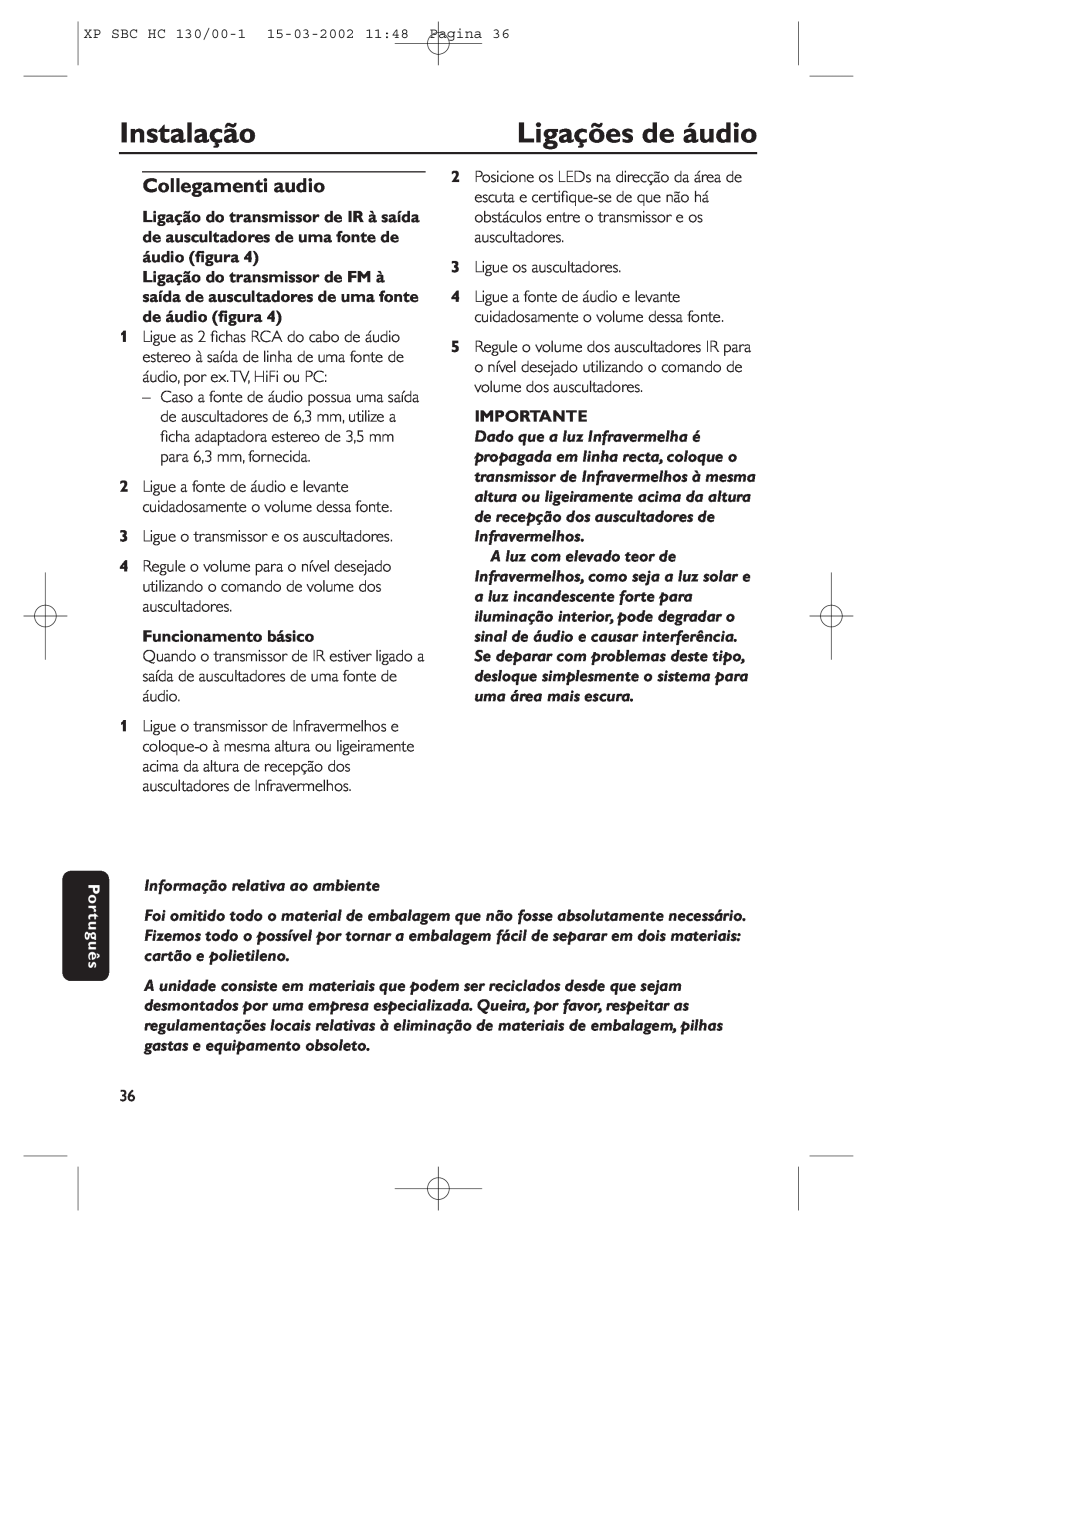 Philips SBC HC130 manual Instalação, Ligações de áudio, Collegamenti audio, Funcionamento básico, Importante, Português 